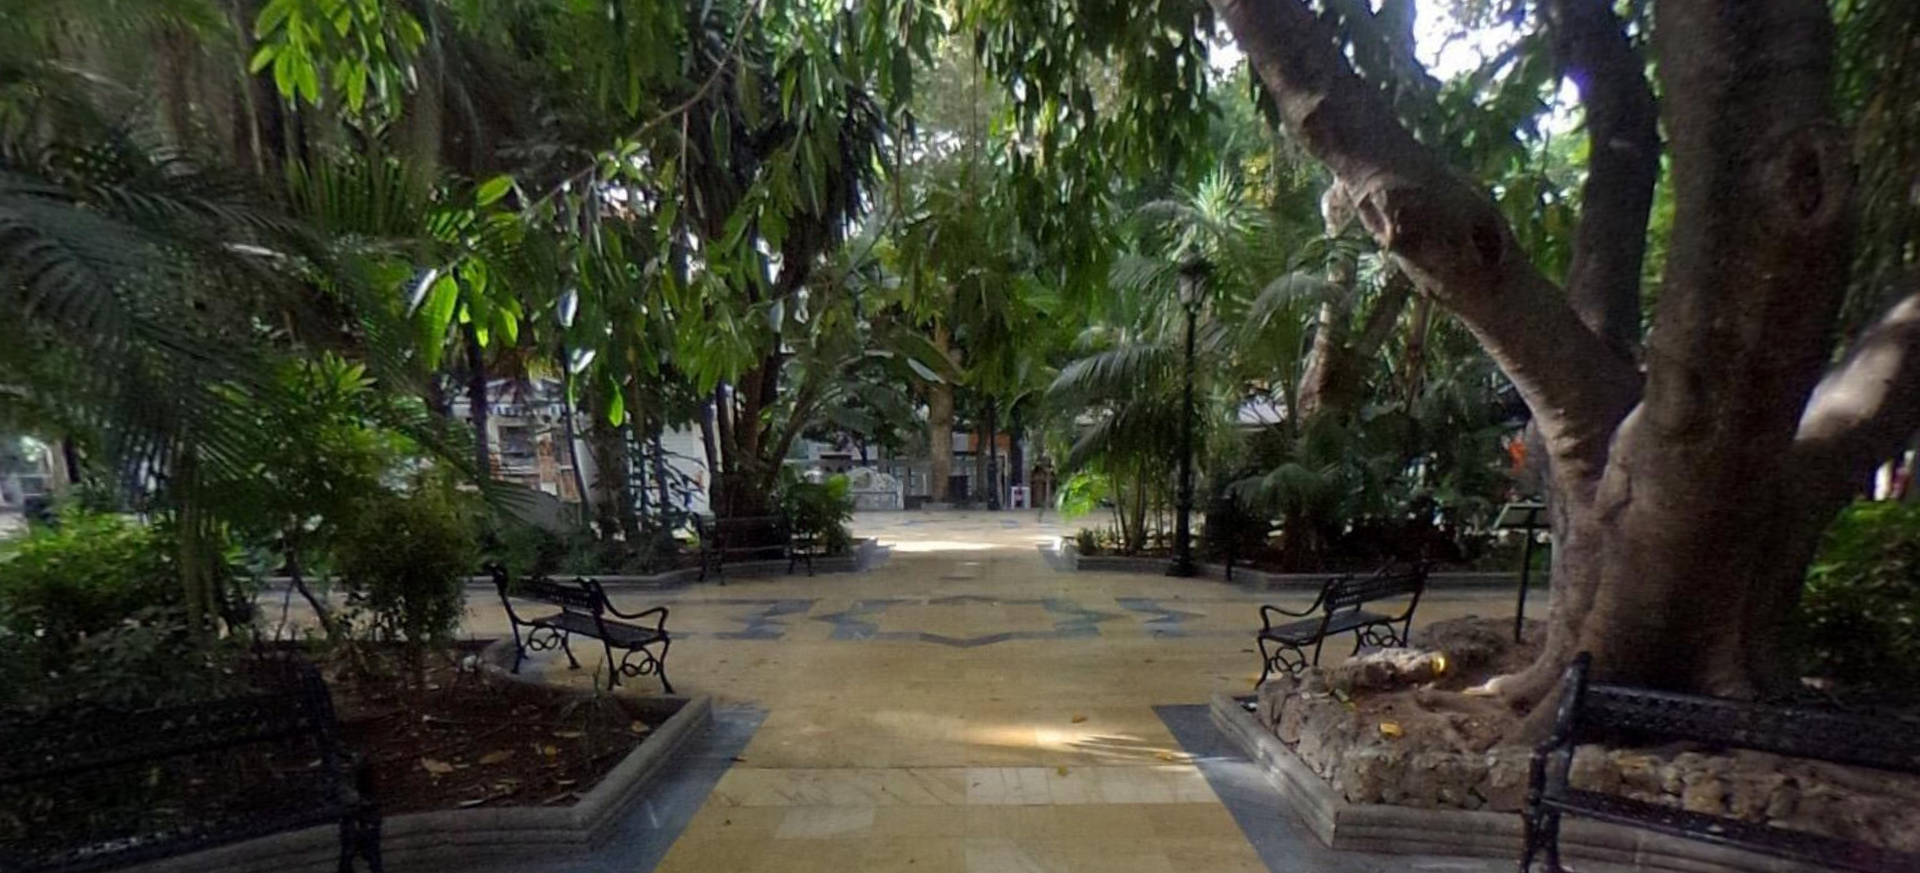 Parque de la Alameda by Google Earth